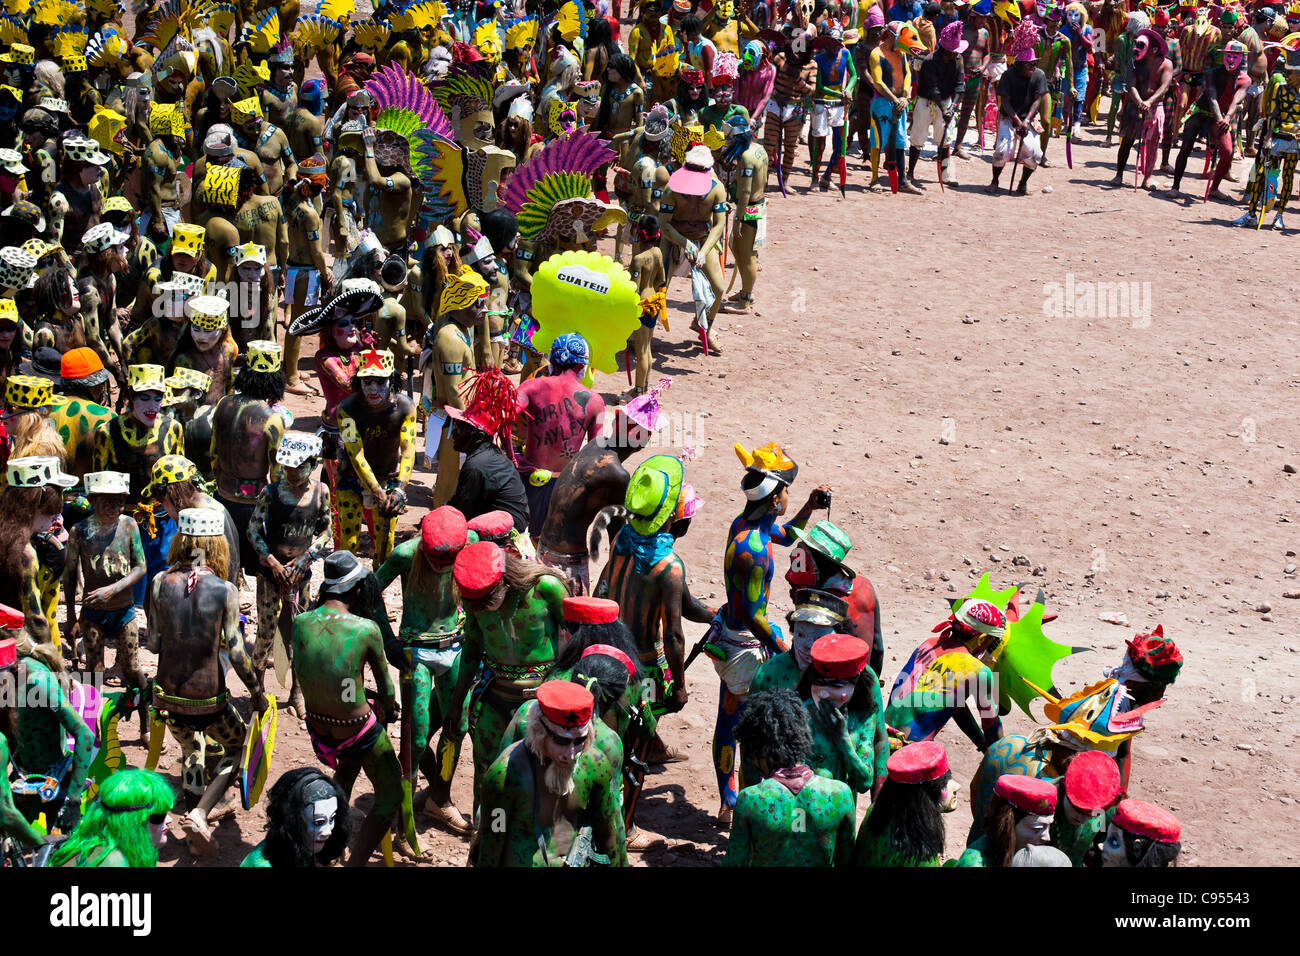 Cora-Indianer, mit bunten Dämon Masken, nehmen einen Teil in einer Prozession während der Heiligen Feier der Karwoche in Mexiko. Stockfoto